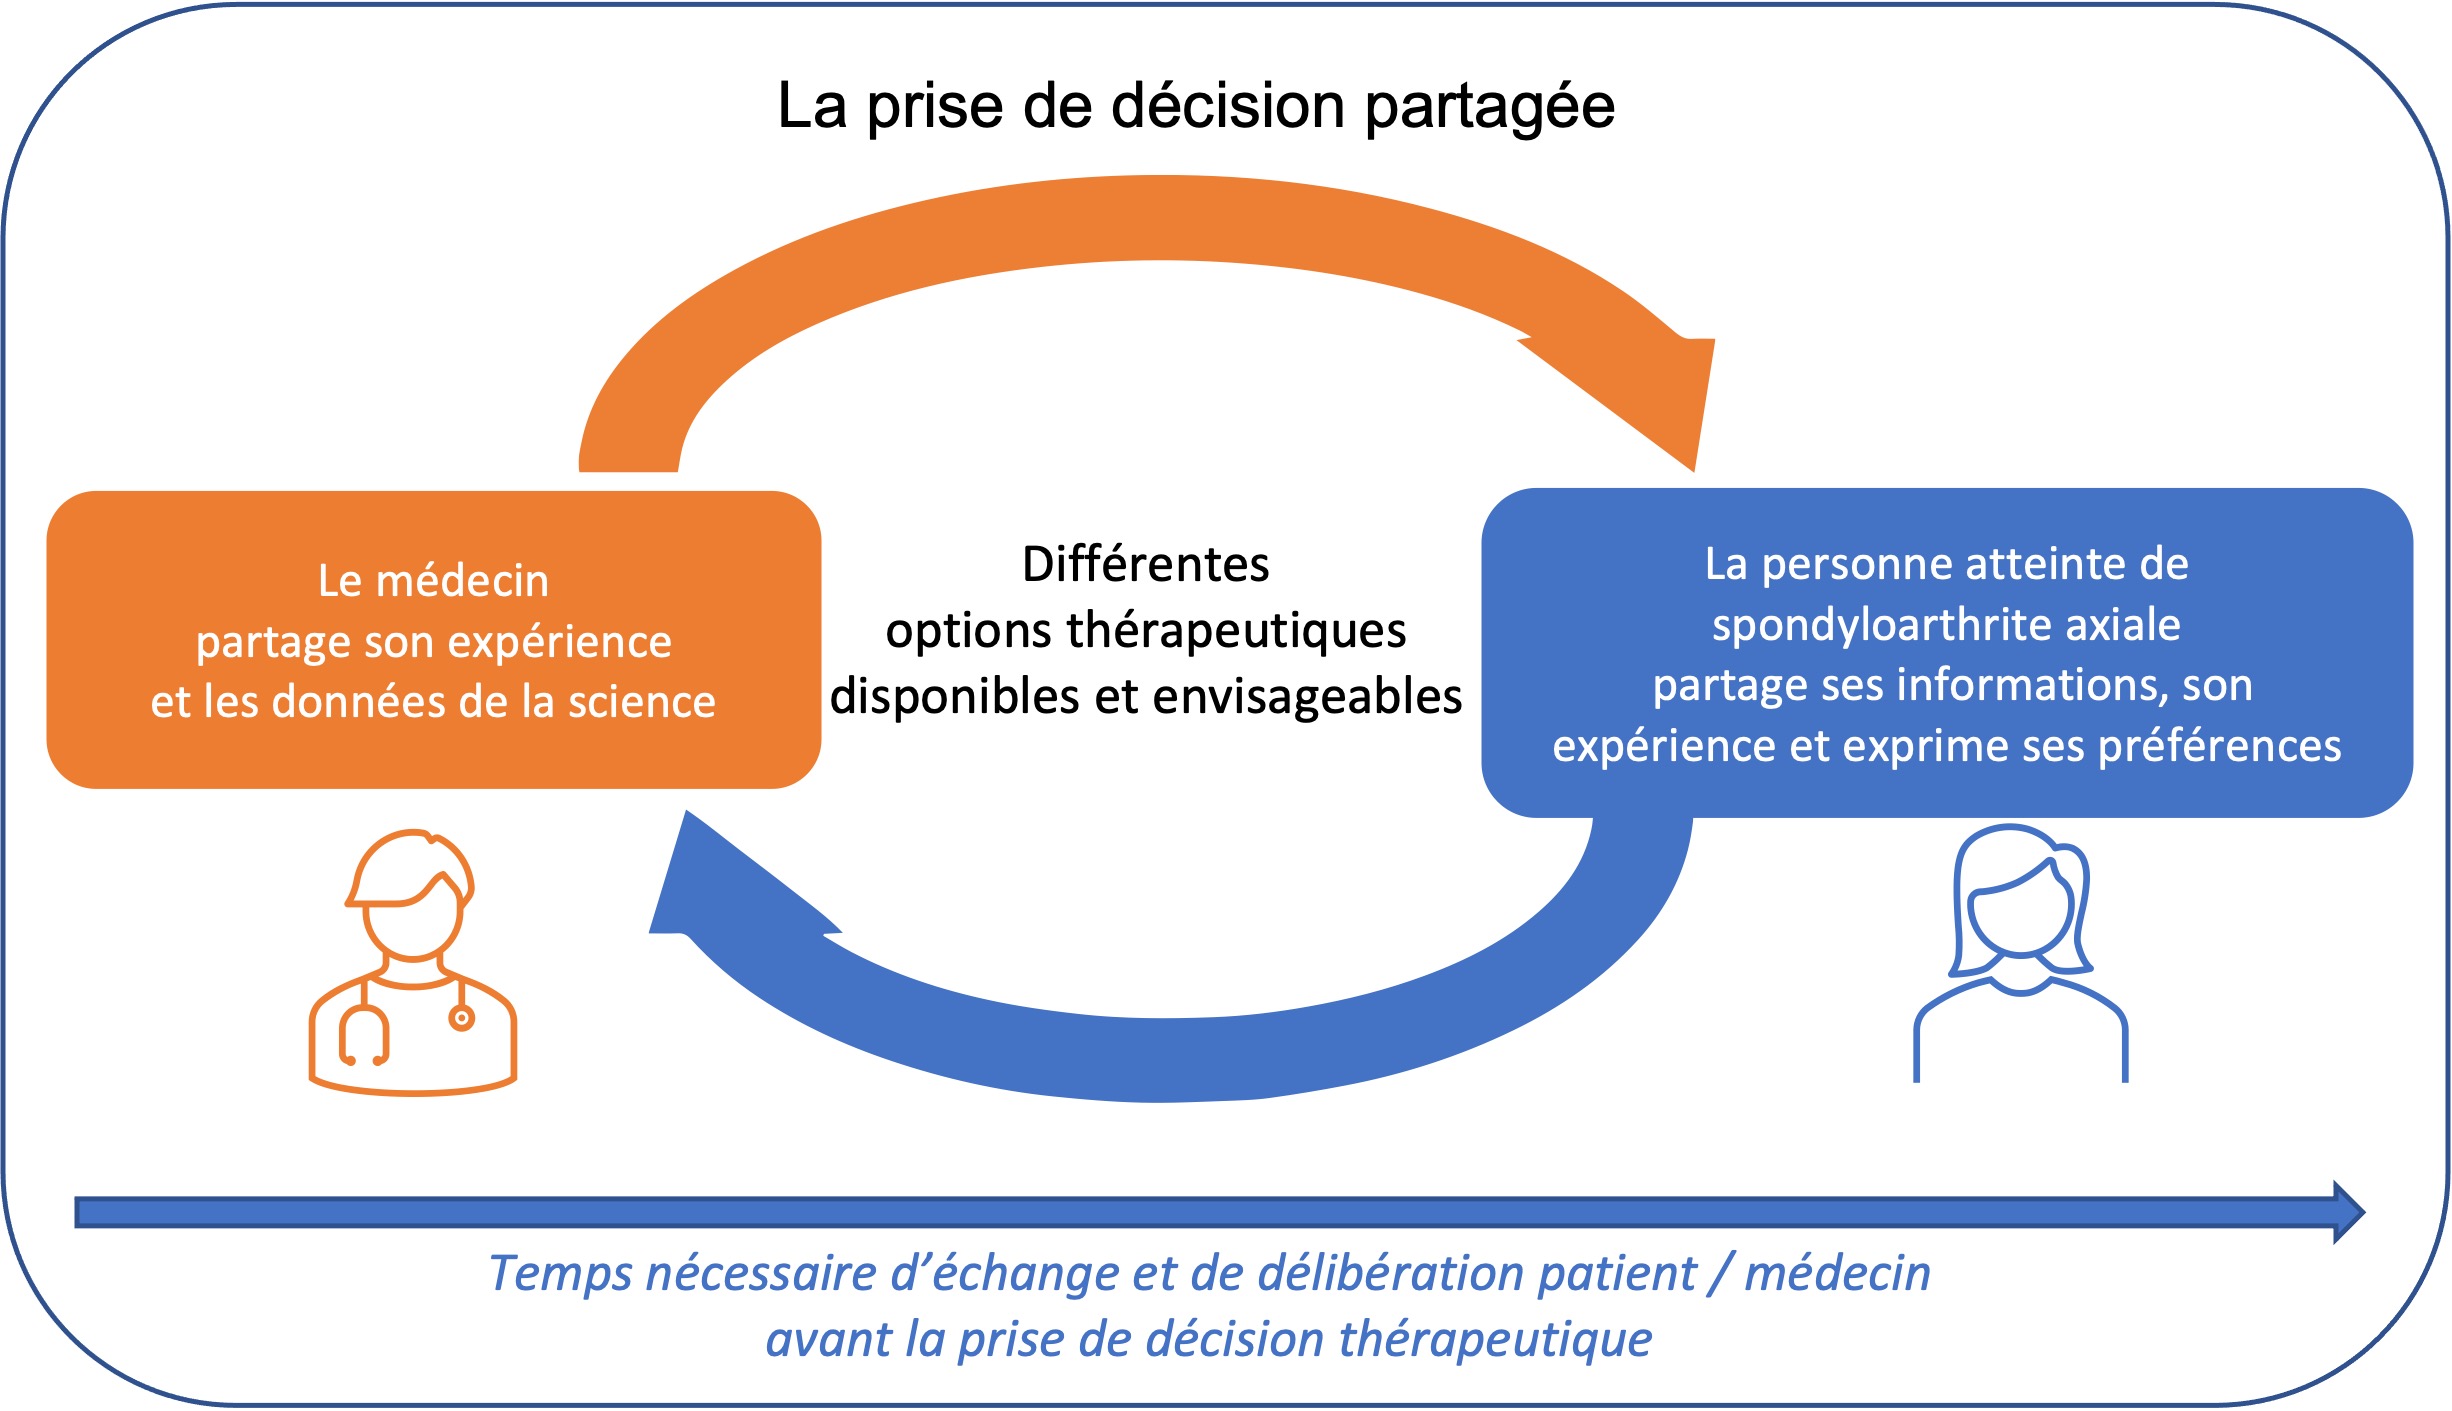 schéma sur la prise de décision partagée entre médecin et patient